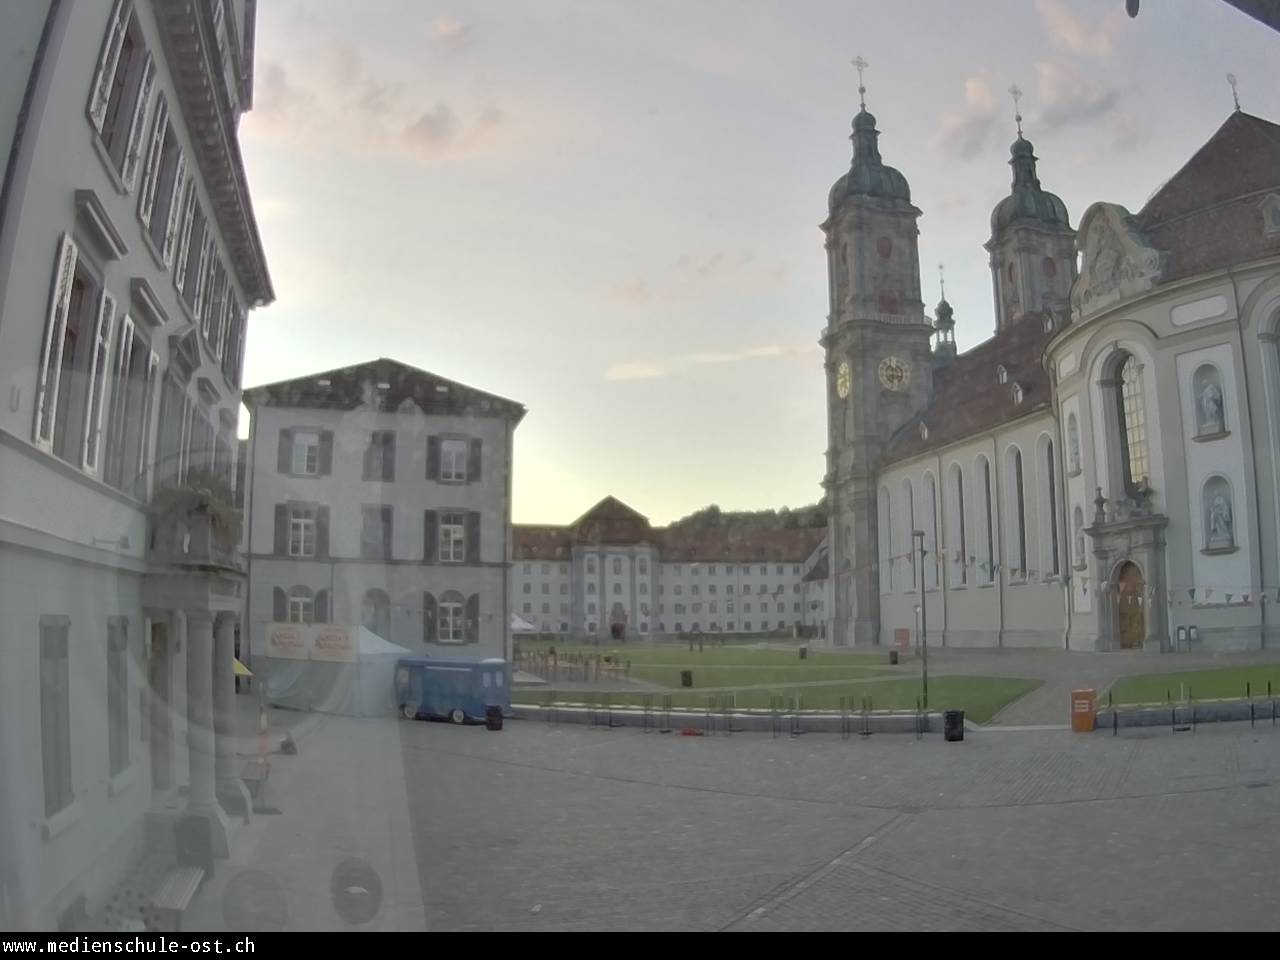 St. Gallen Fri. 05:46